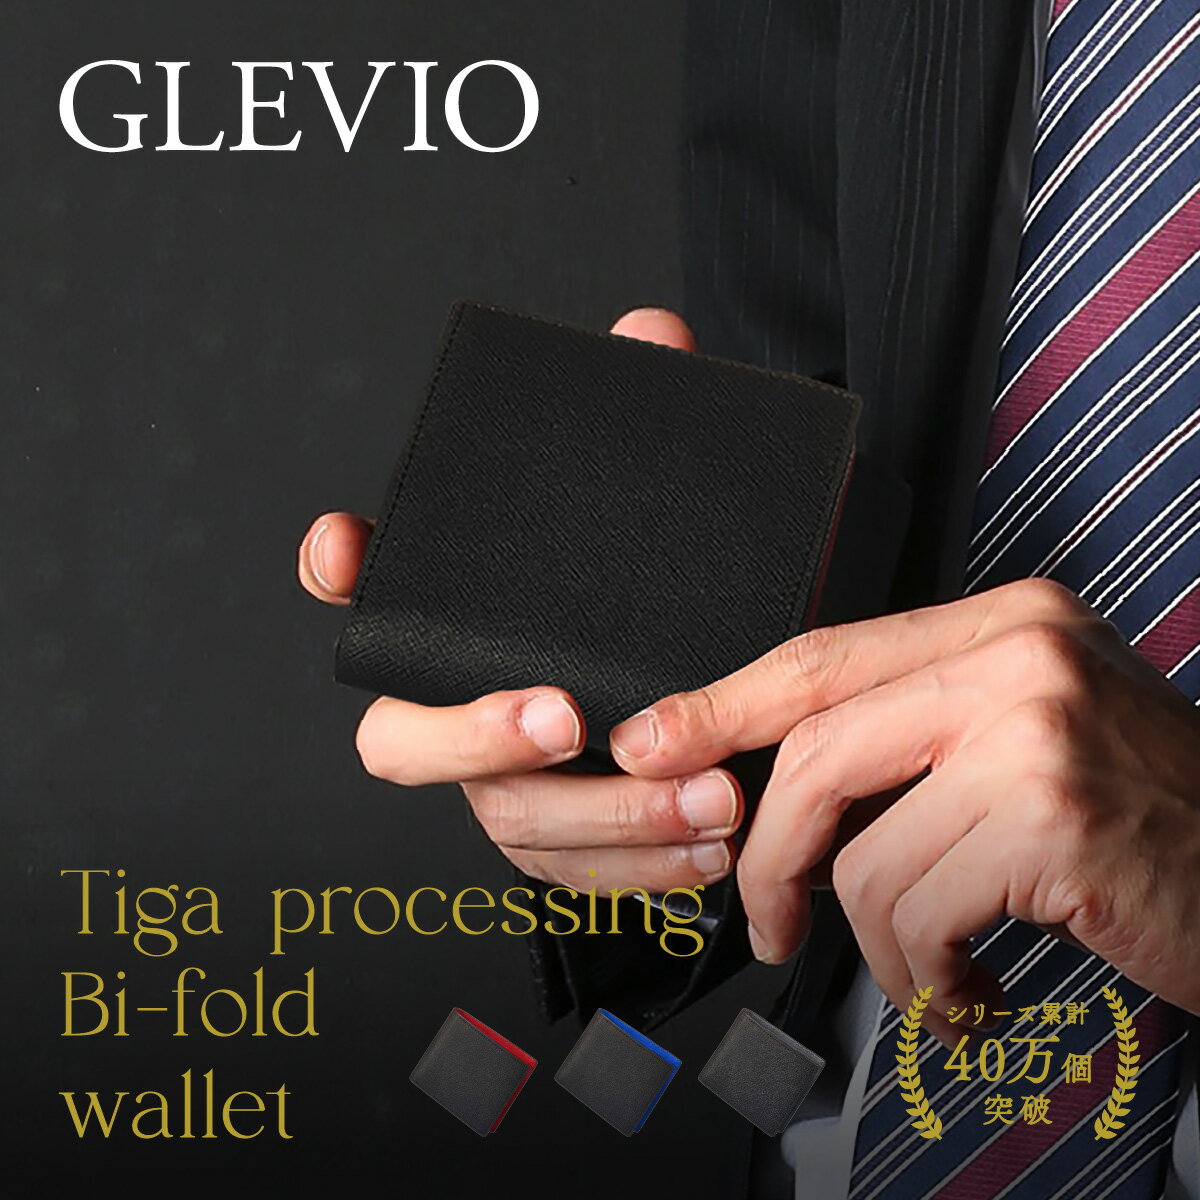 (GLEVIO) 二つ折りメンズ財布｜財布 メンズ 二つ折り財布 ミニ財布 二つ折り コンパクト 財布 三つ折り財布 ブランド 小さい財布 お財布 薄い財布 財布 ファスナー 使いやすい 折り財布